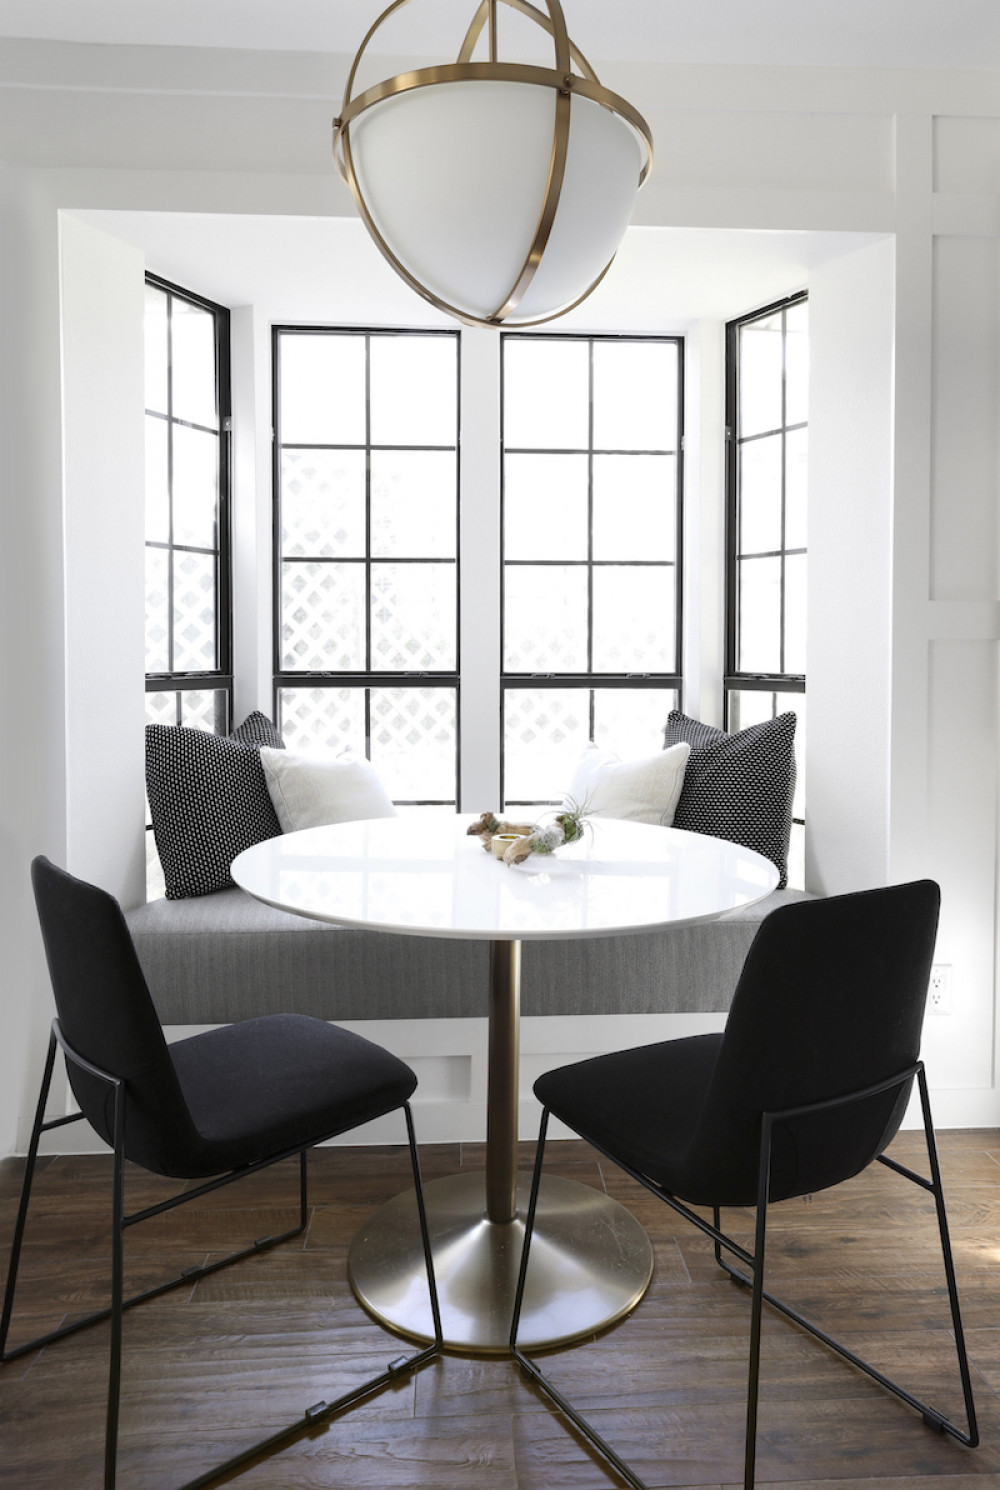 beyond-interior-design-kitchen-breakfast-table-window-seat